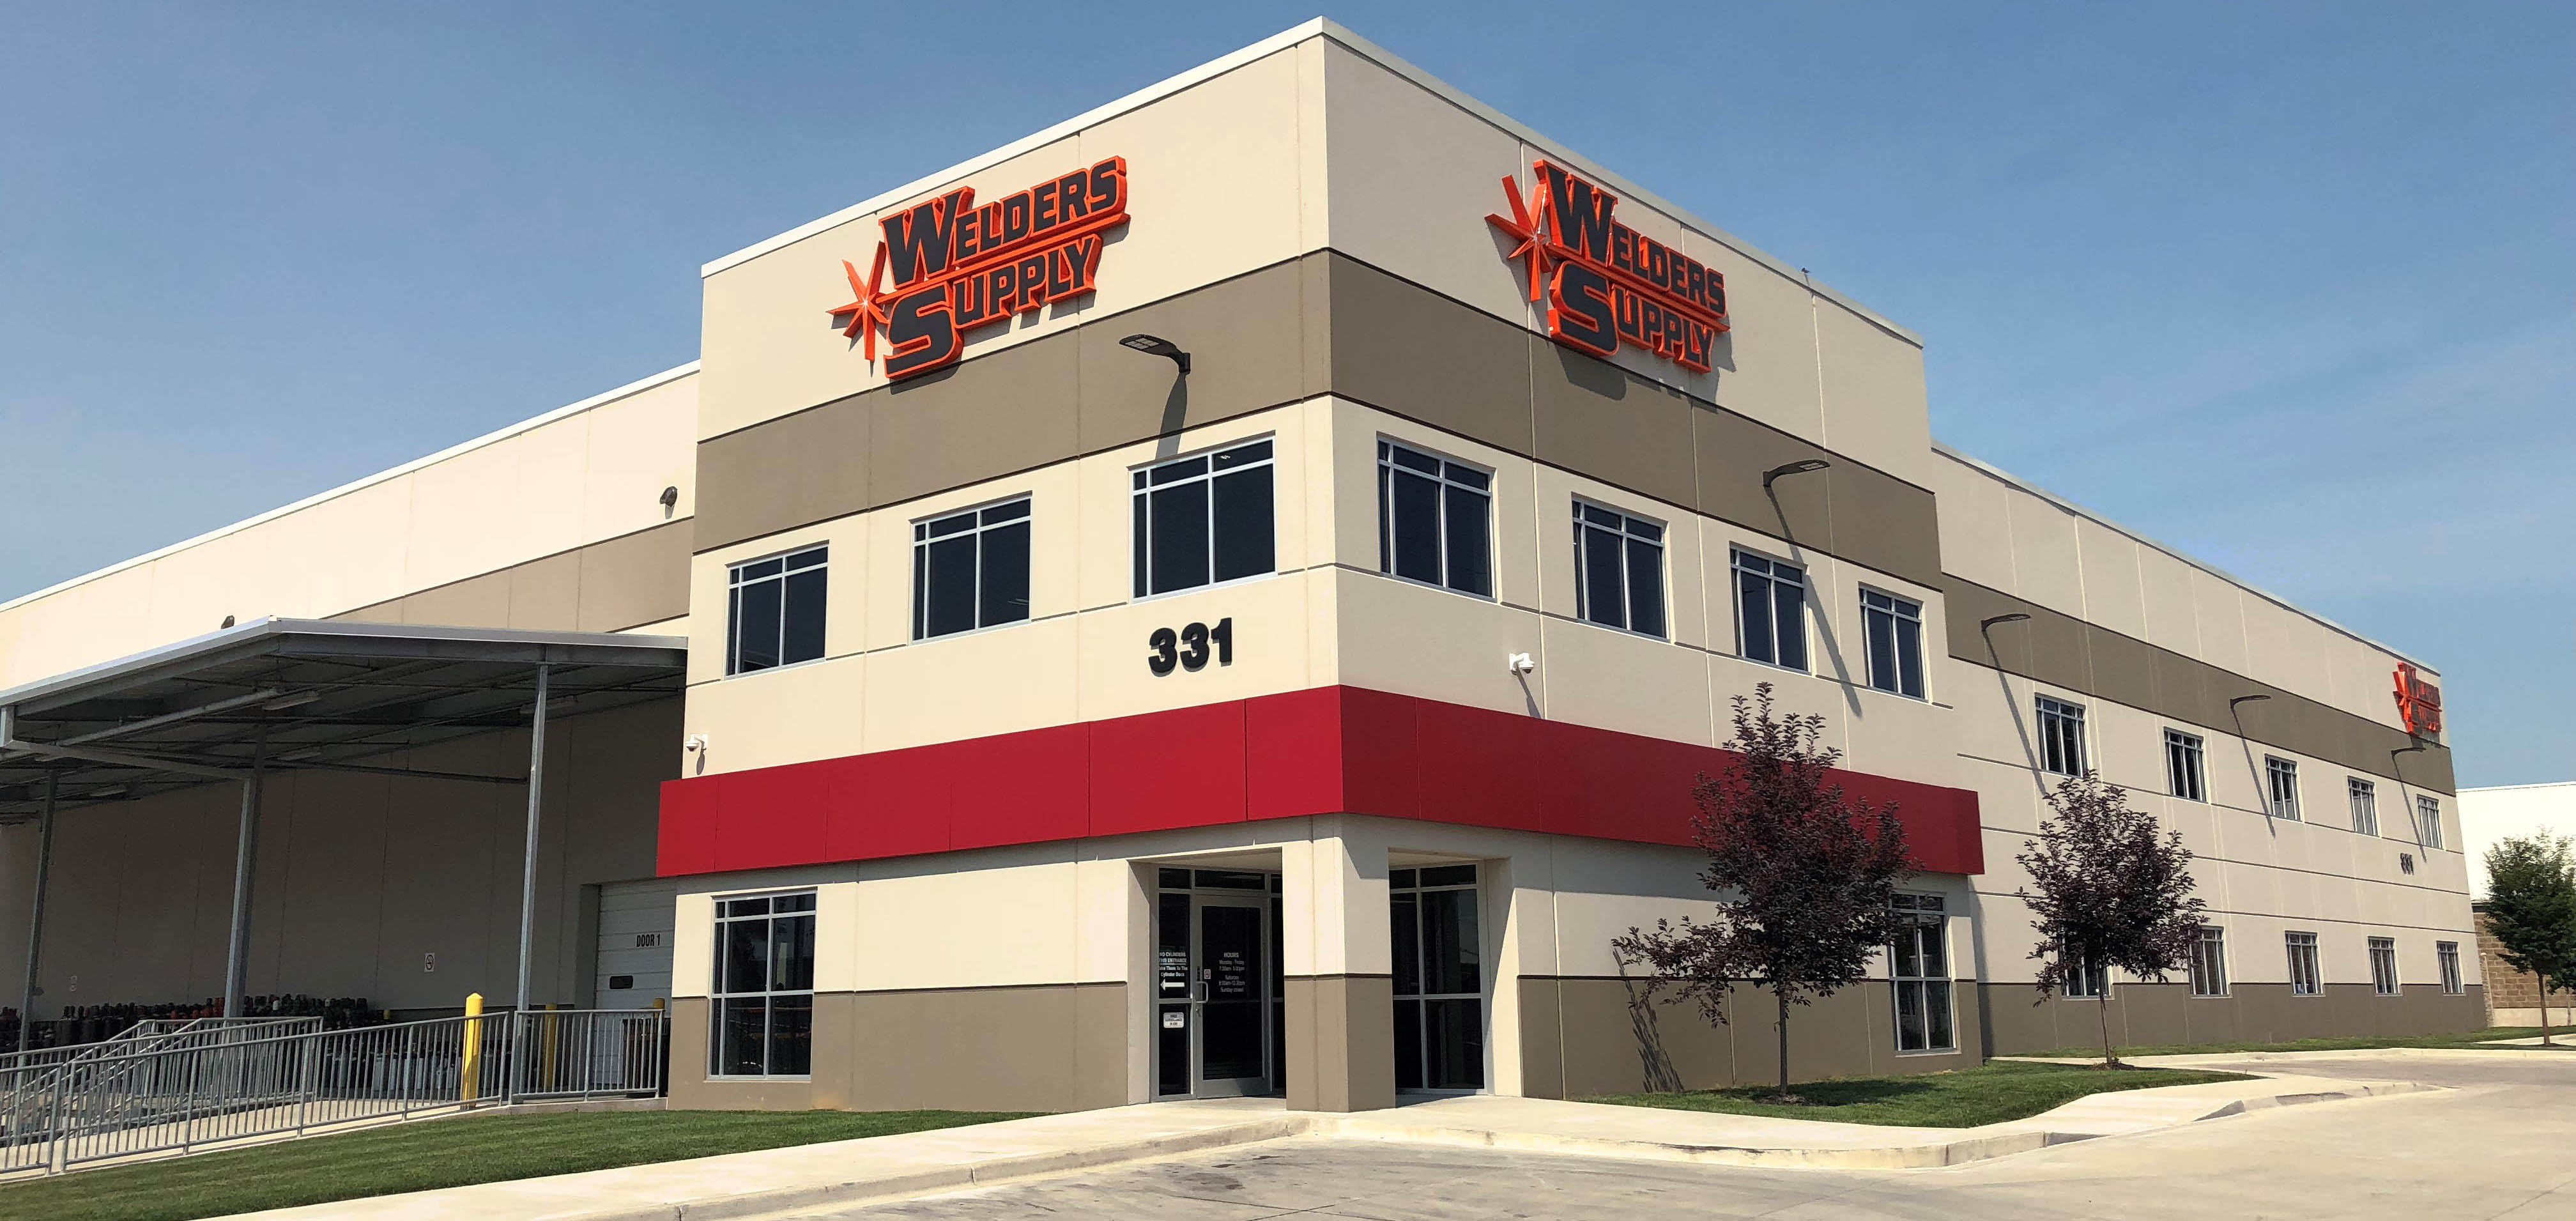 Welders Supply Company of Louisville please add date 2018